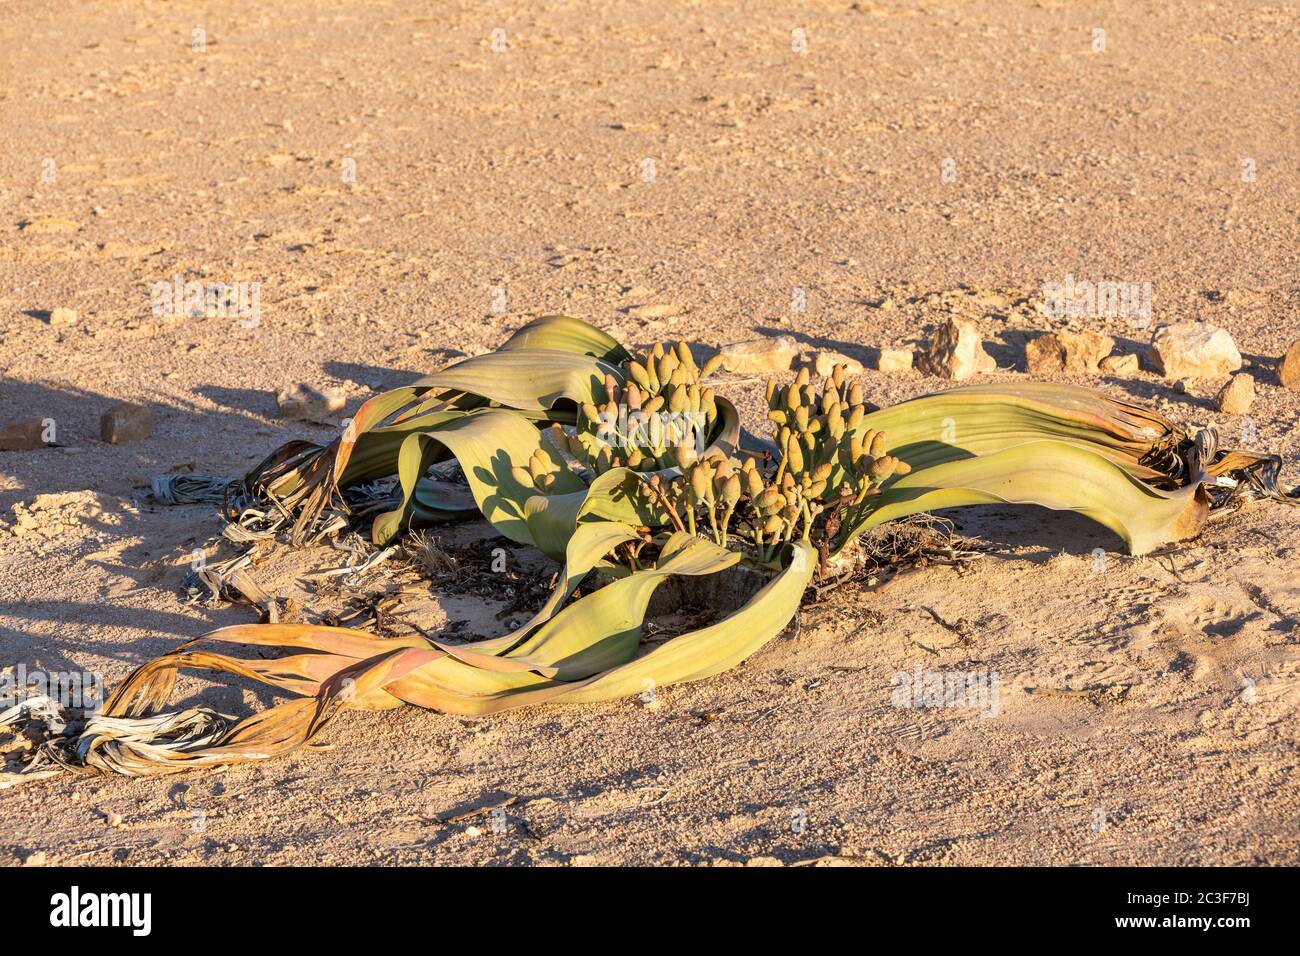 Welwitschia mirabilis desert plant, Namibia Stock Photo